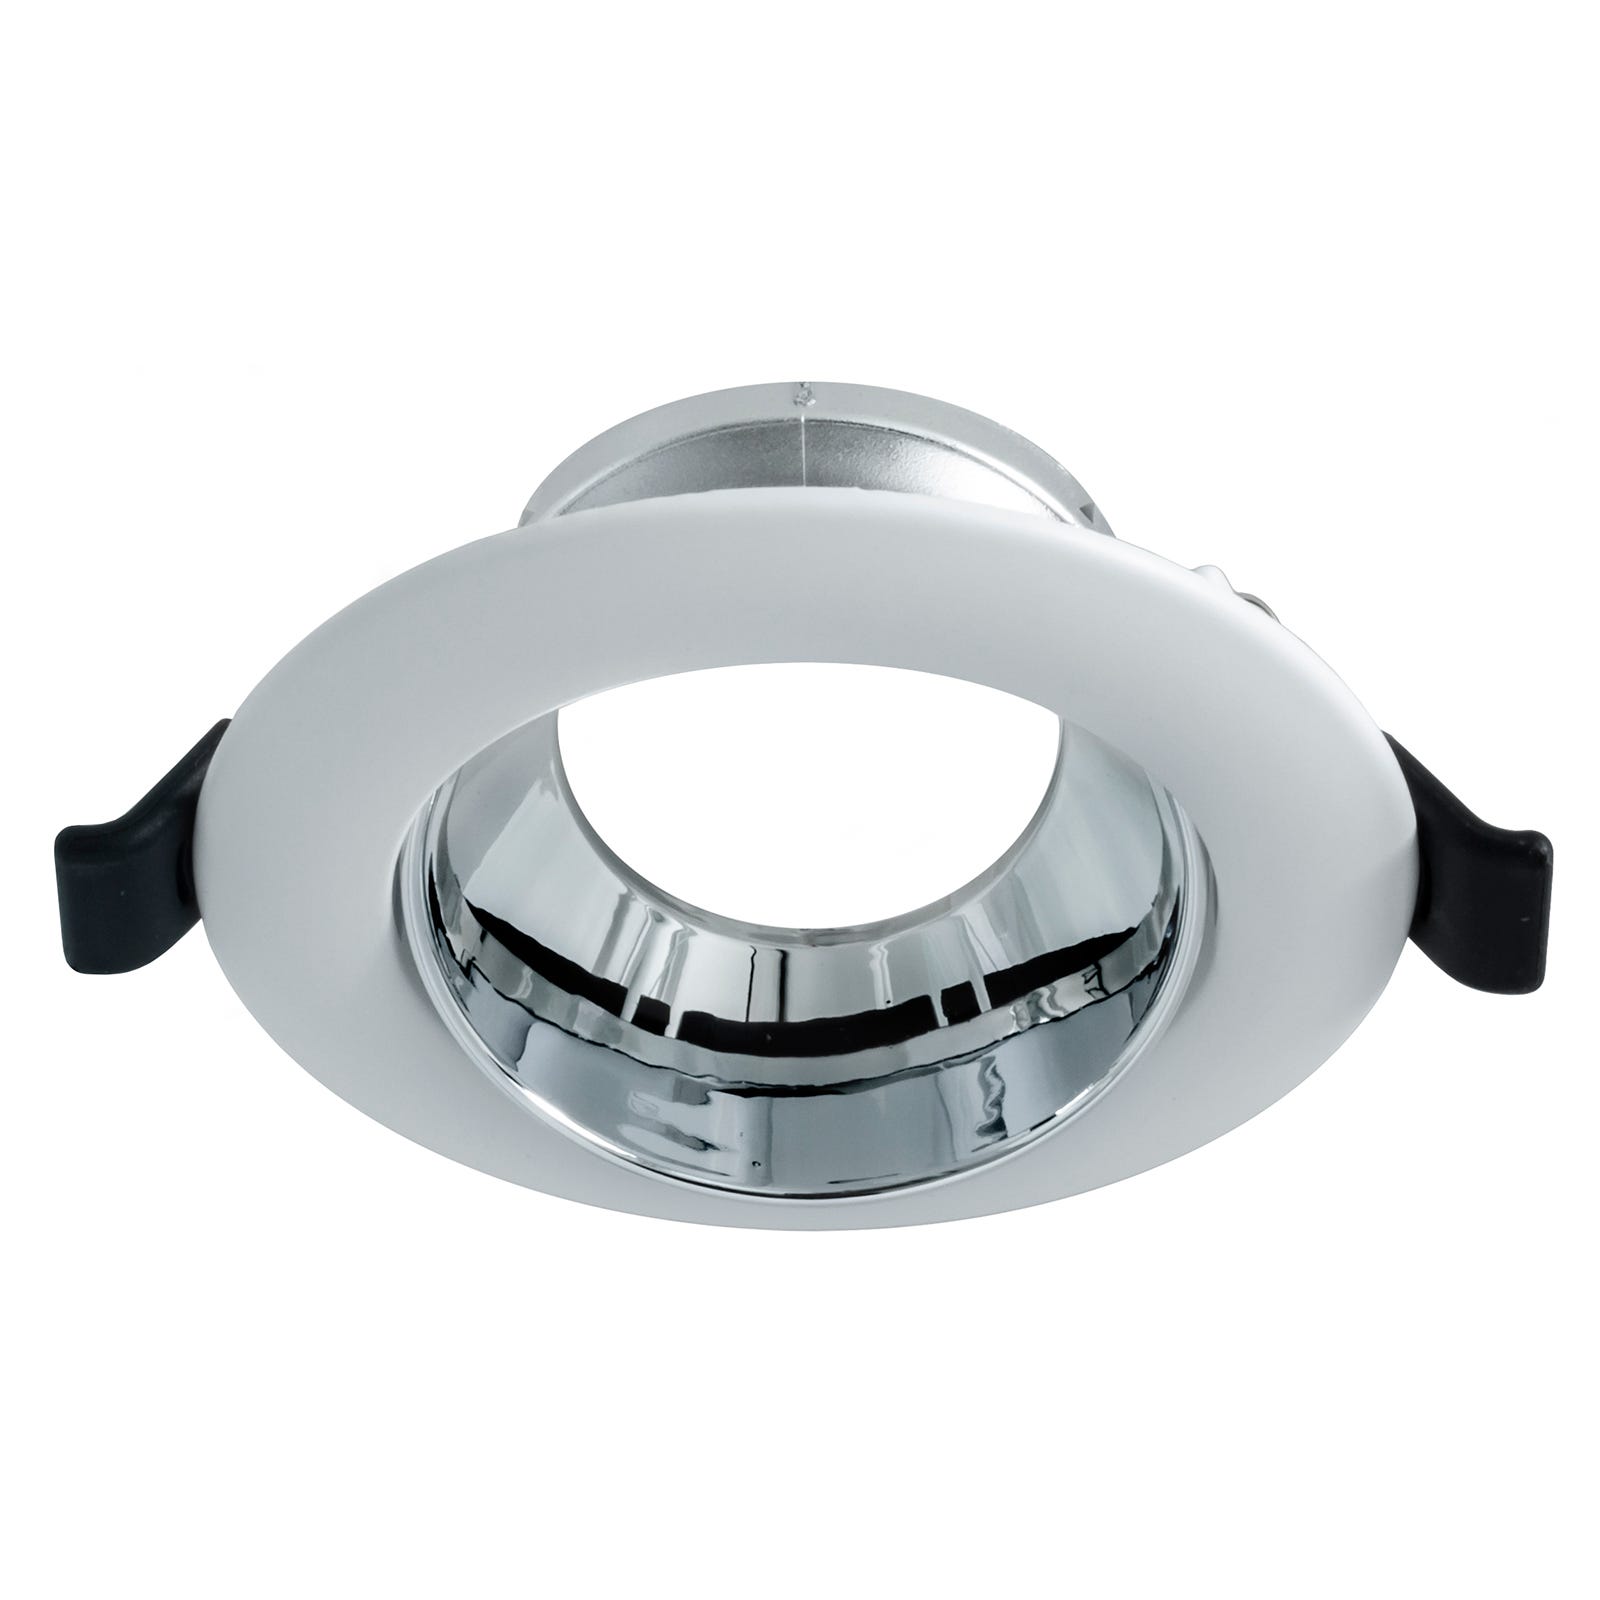 Support de spot LED rond et ajustable pour plafonnier encastré